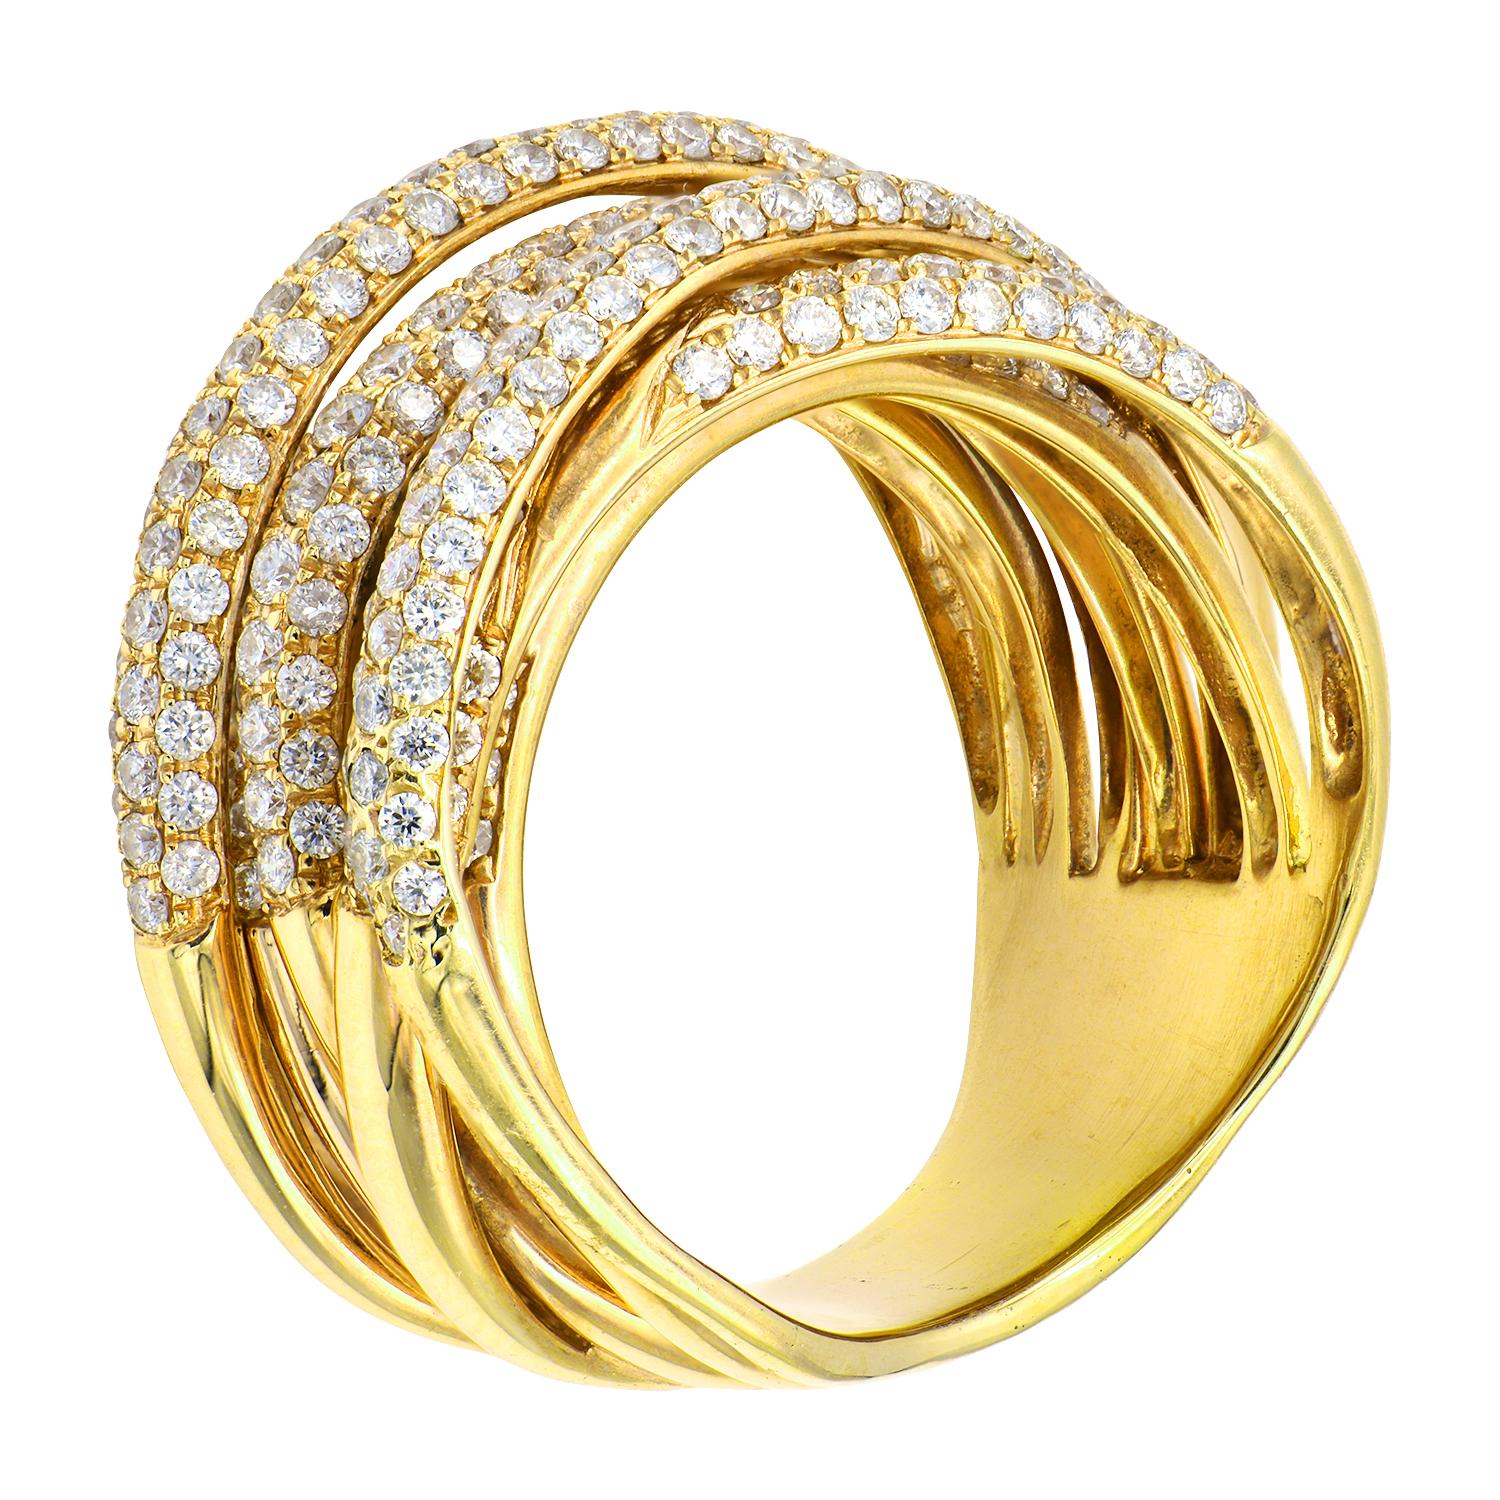 Dieser wunderschöne, modische Crossover-Ring ist ein echter Hingucker. Dieser Ring besteht aus 322 runden Diamanten der Farbe G (VS21) von insgesamt 2,32 Karat. Die Diamanten sind wunderschön in 12,3 Gramm 18 Karat Gelbgold gefasst. Die Besonderheit